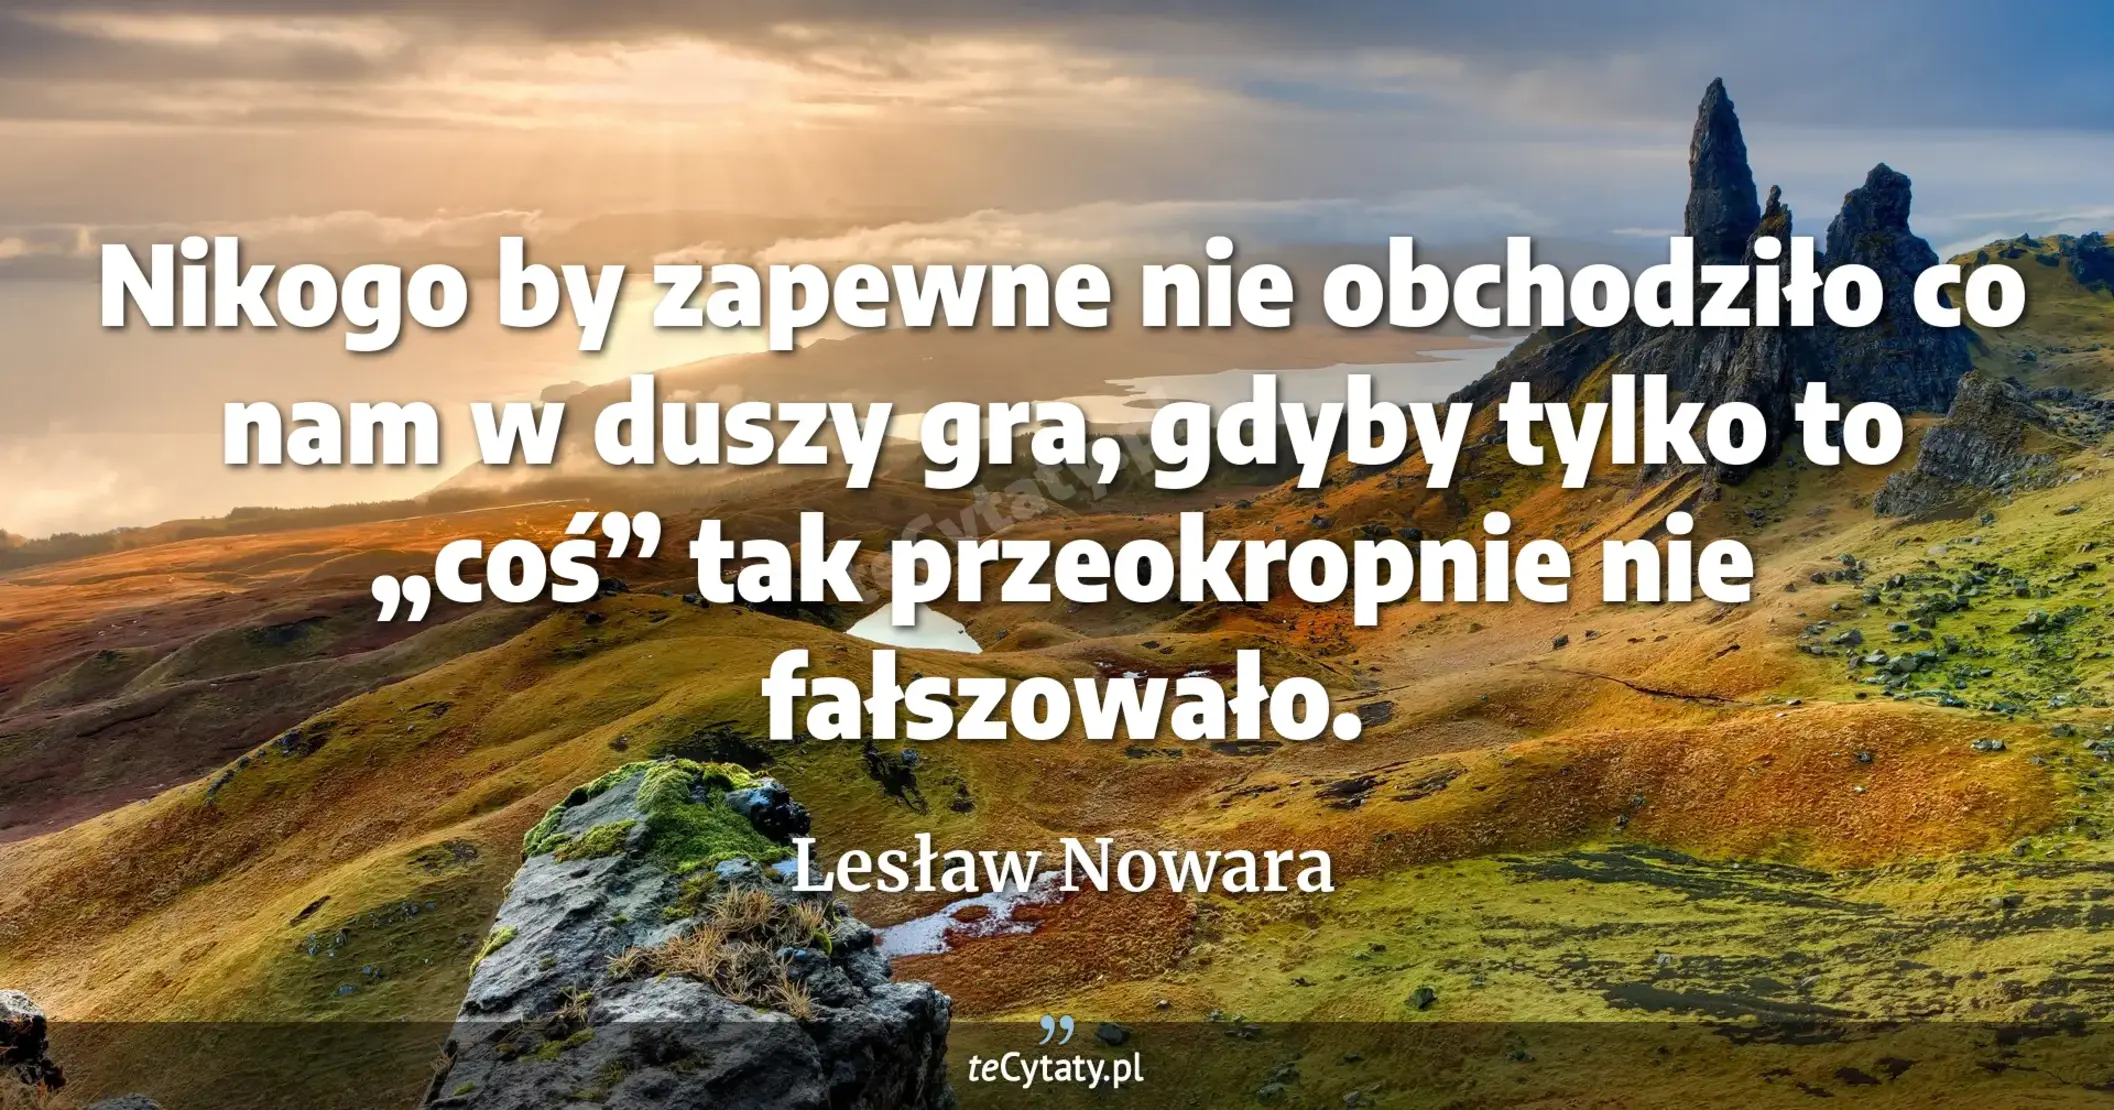 Nikogo by zapewne nie obchodziło co nam w duszy gra, gdyby tylko to „coś” tak przeokropnie nie fałszowało. - Lesław Nowara